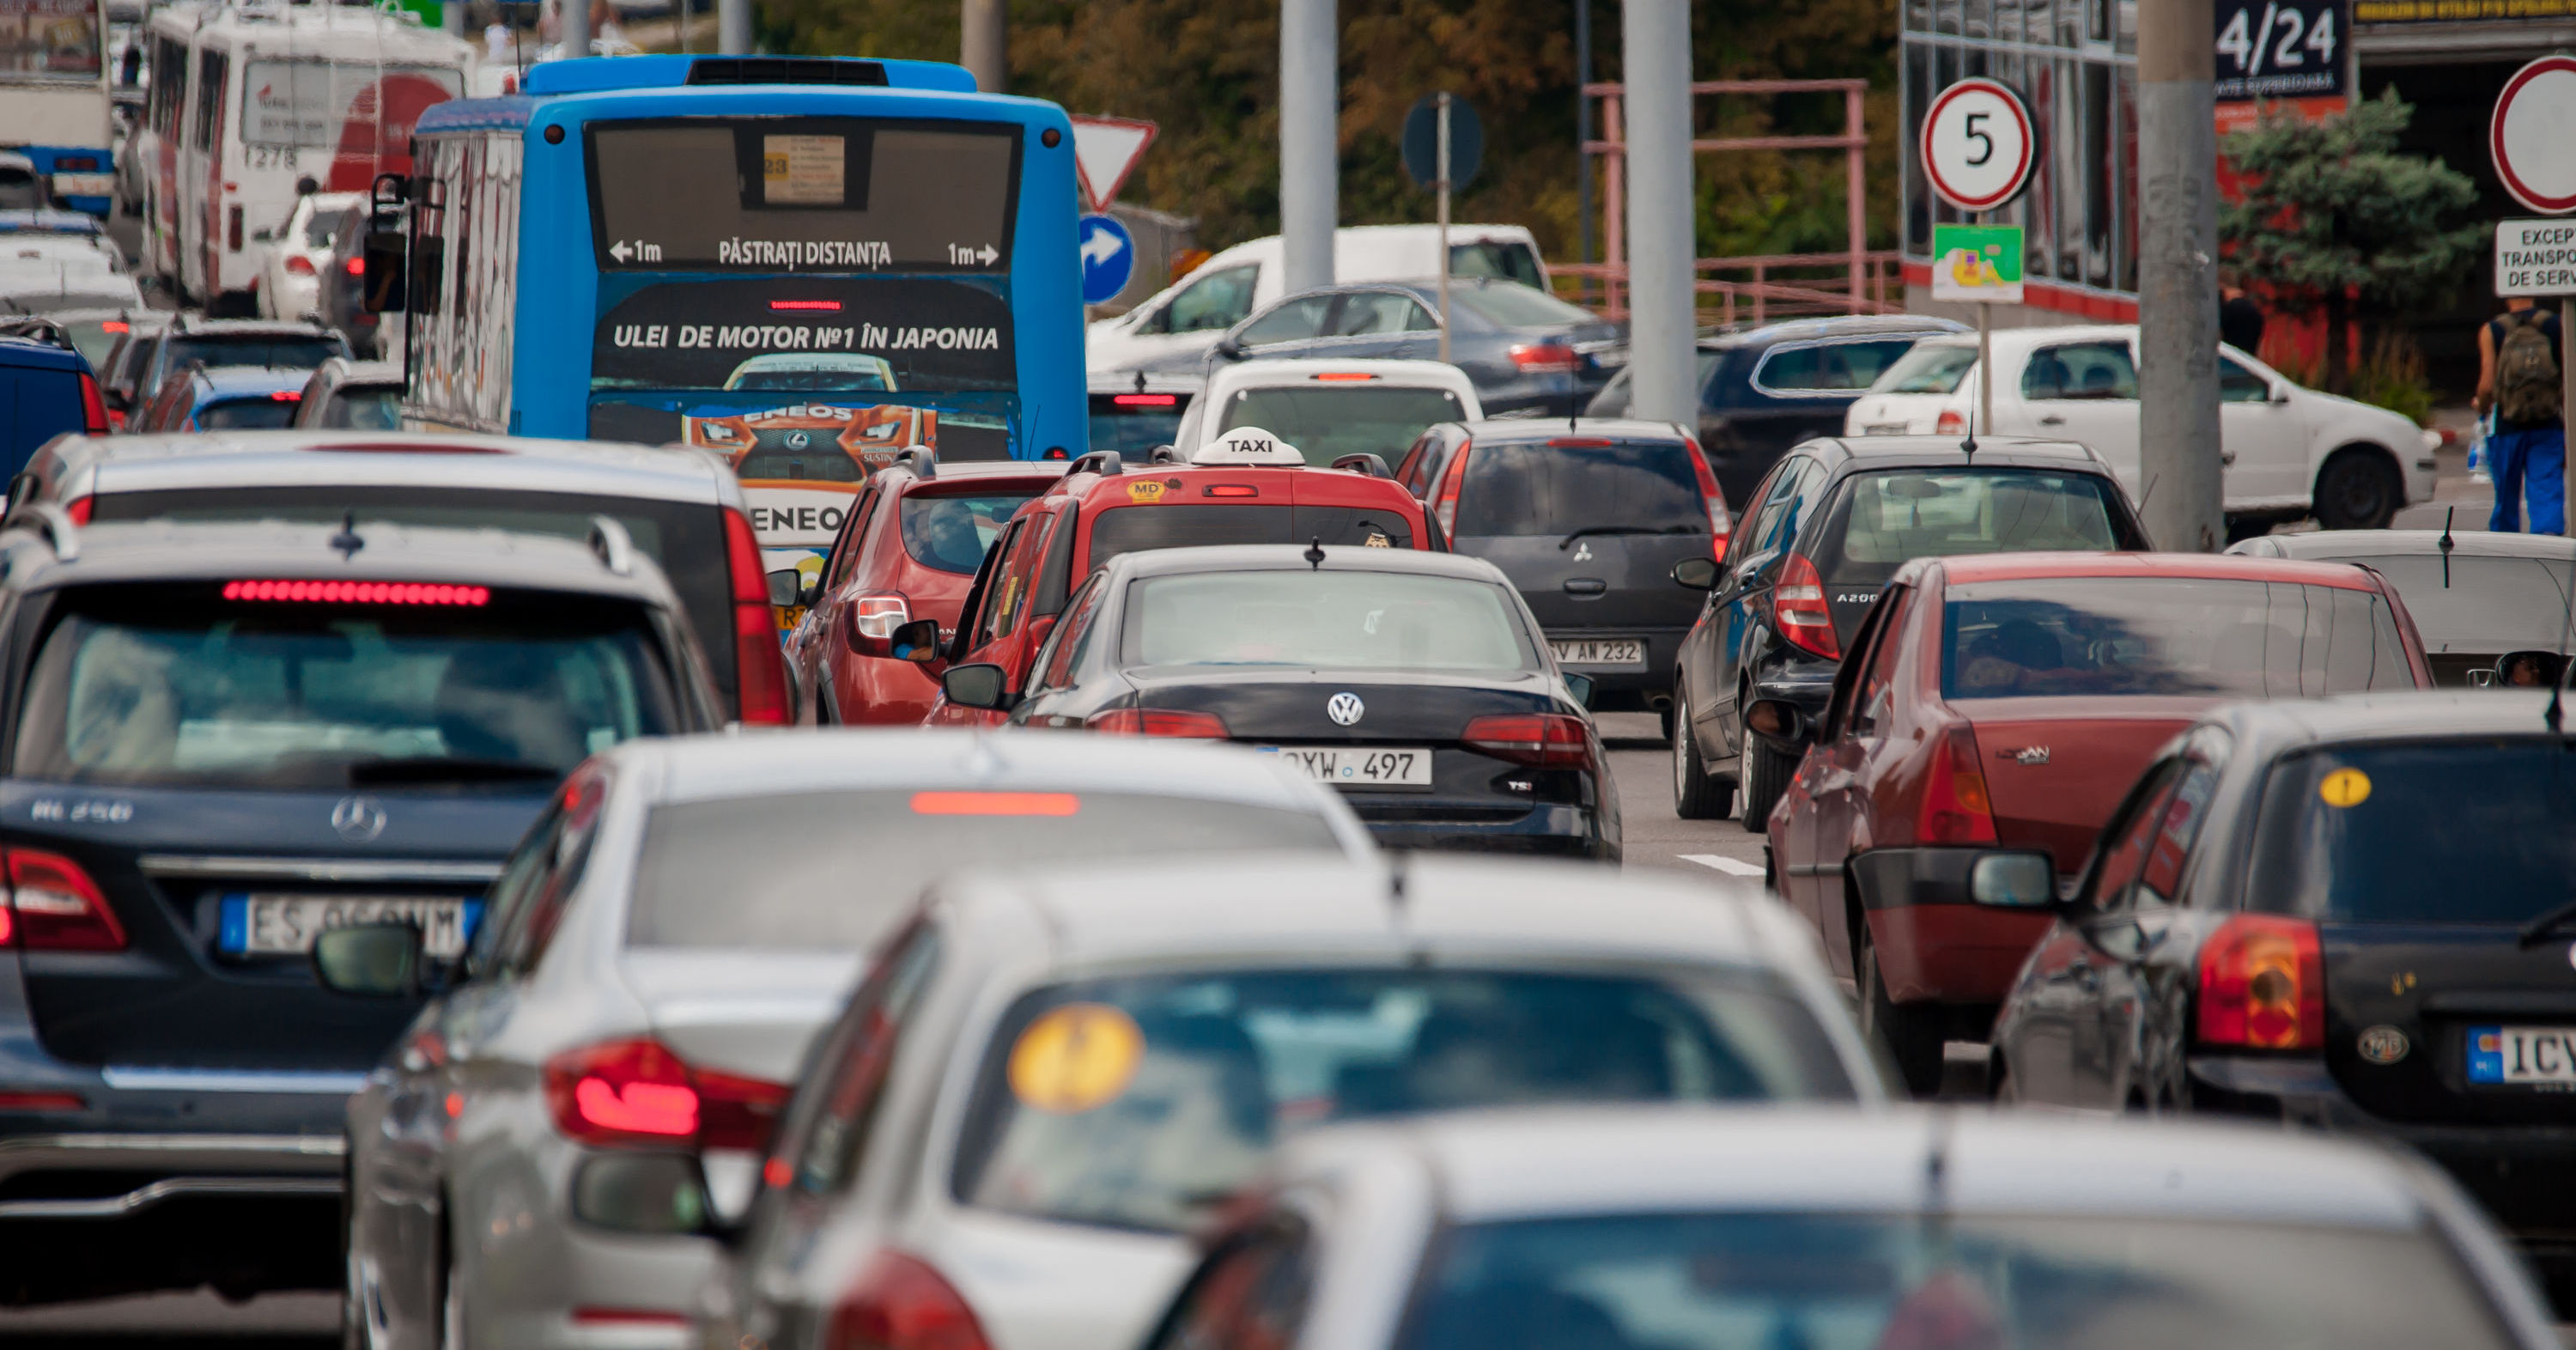 В Молдове зарегистрировано более 1,1 млн транспортных средств. Фото: Point.md.